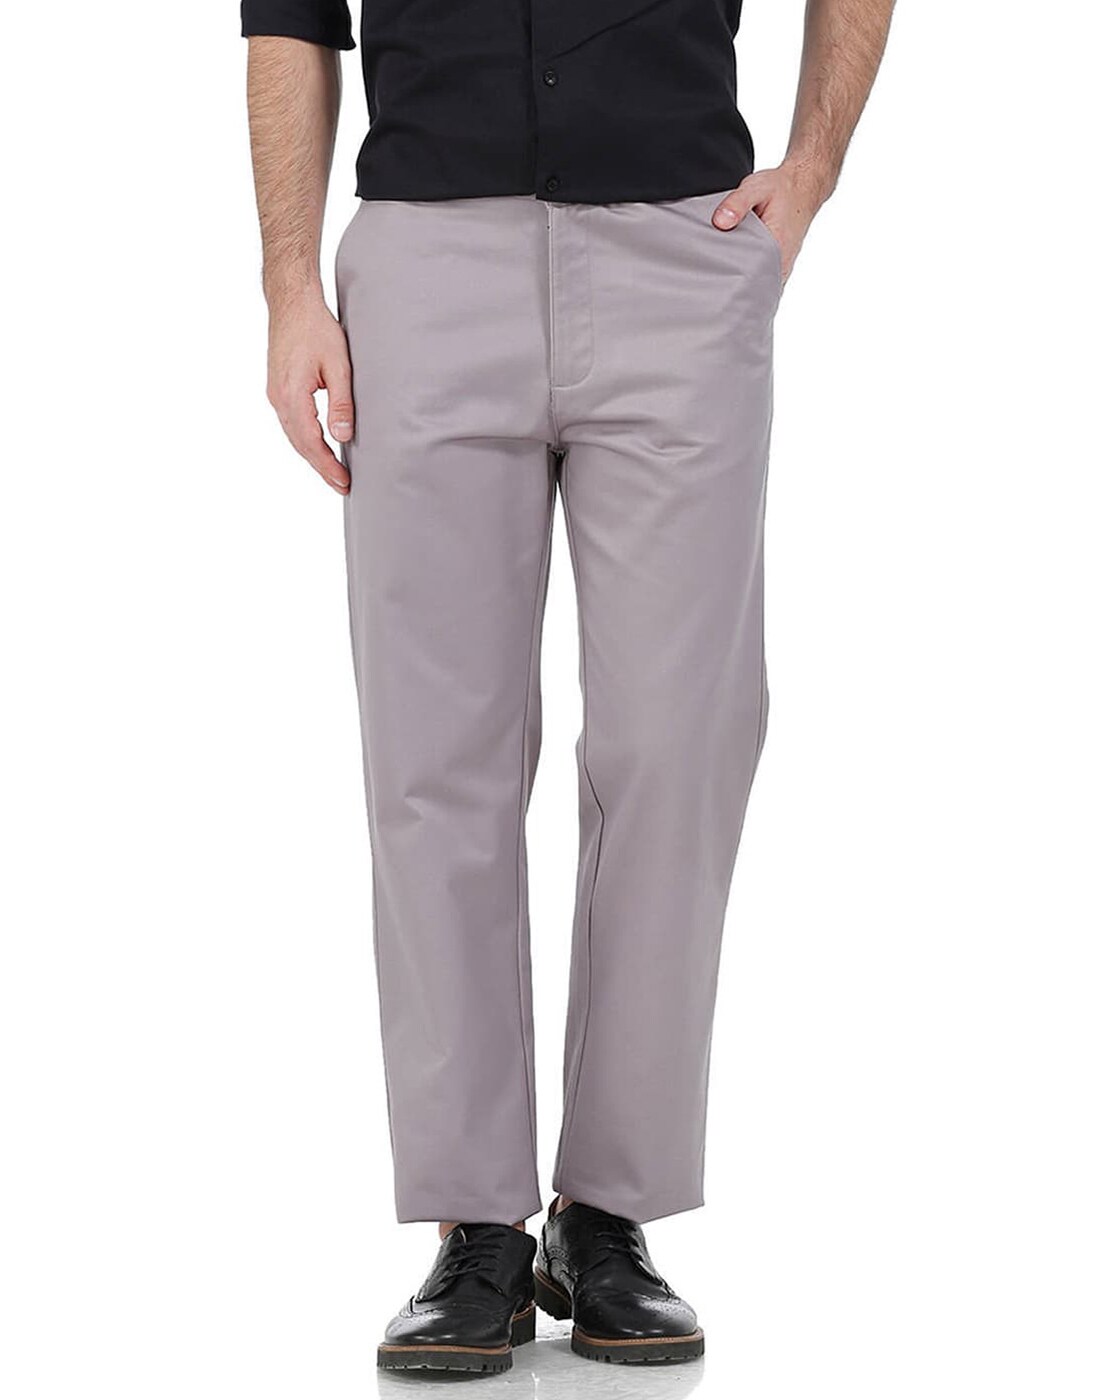 Buy MONTREZ Men Comfort Reguler Fit Cotton Cargos Trousers Brown at  Amazon.in